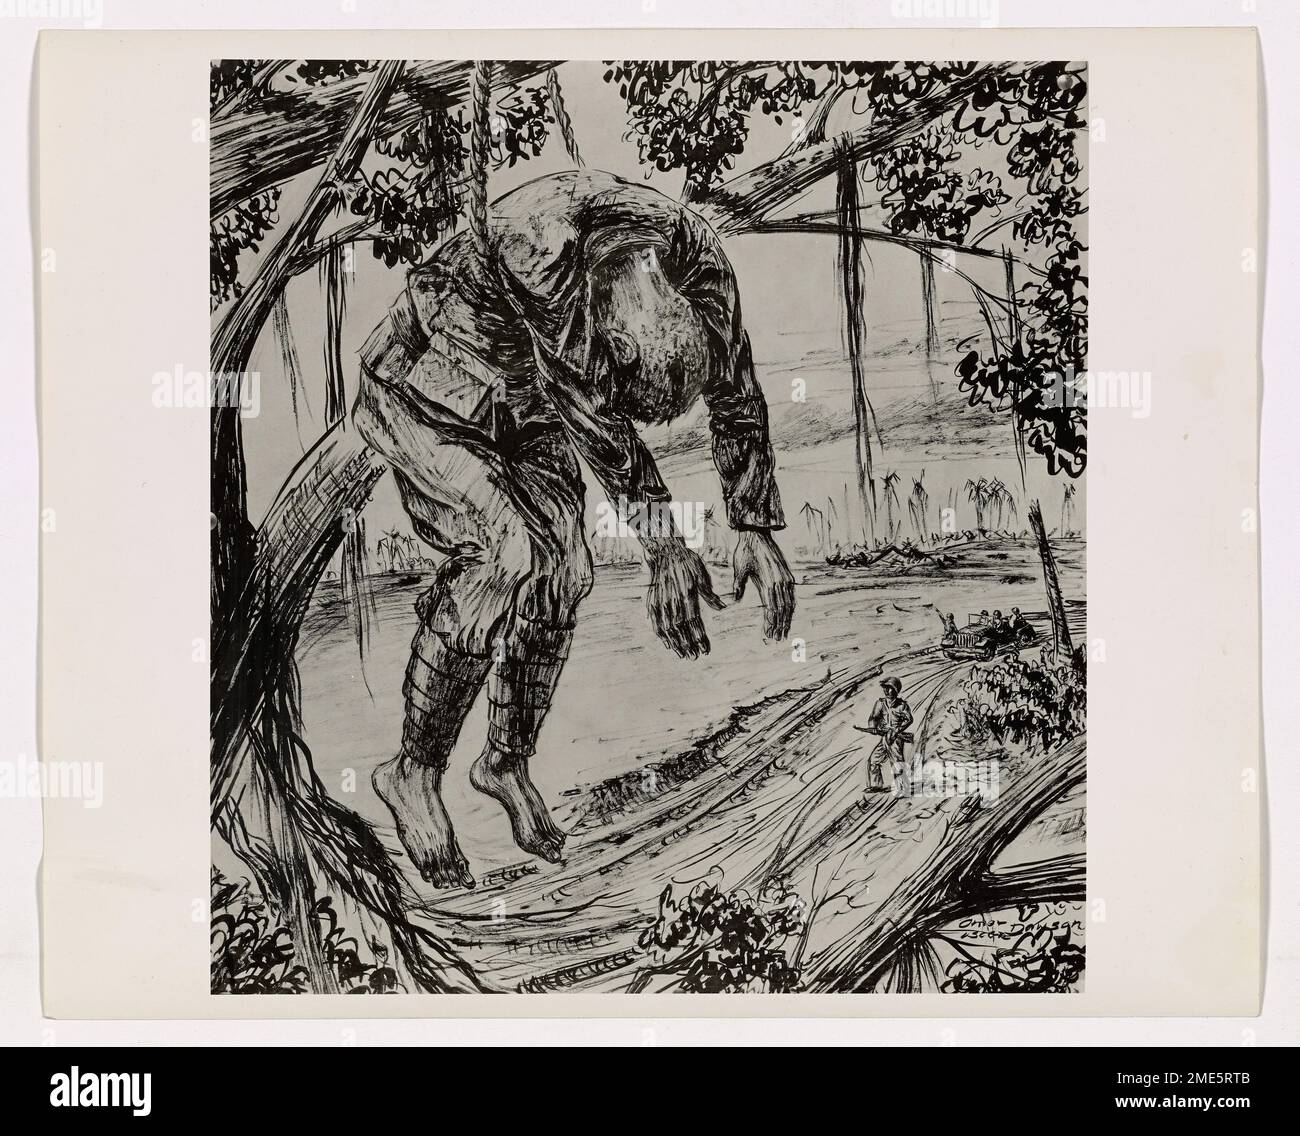 Japanischer Scharfschütze, getötet von Amerikanern. Dieses Bild zeigt ein Kunstwerk eines toten japanischen Scharfschützen, der an Seilen im Baum hängt, von dem er abgefeuert hat, gemalt vom Küstenwache-Kampfkünstler Omar G. Dawson. Stockfoto